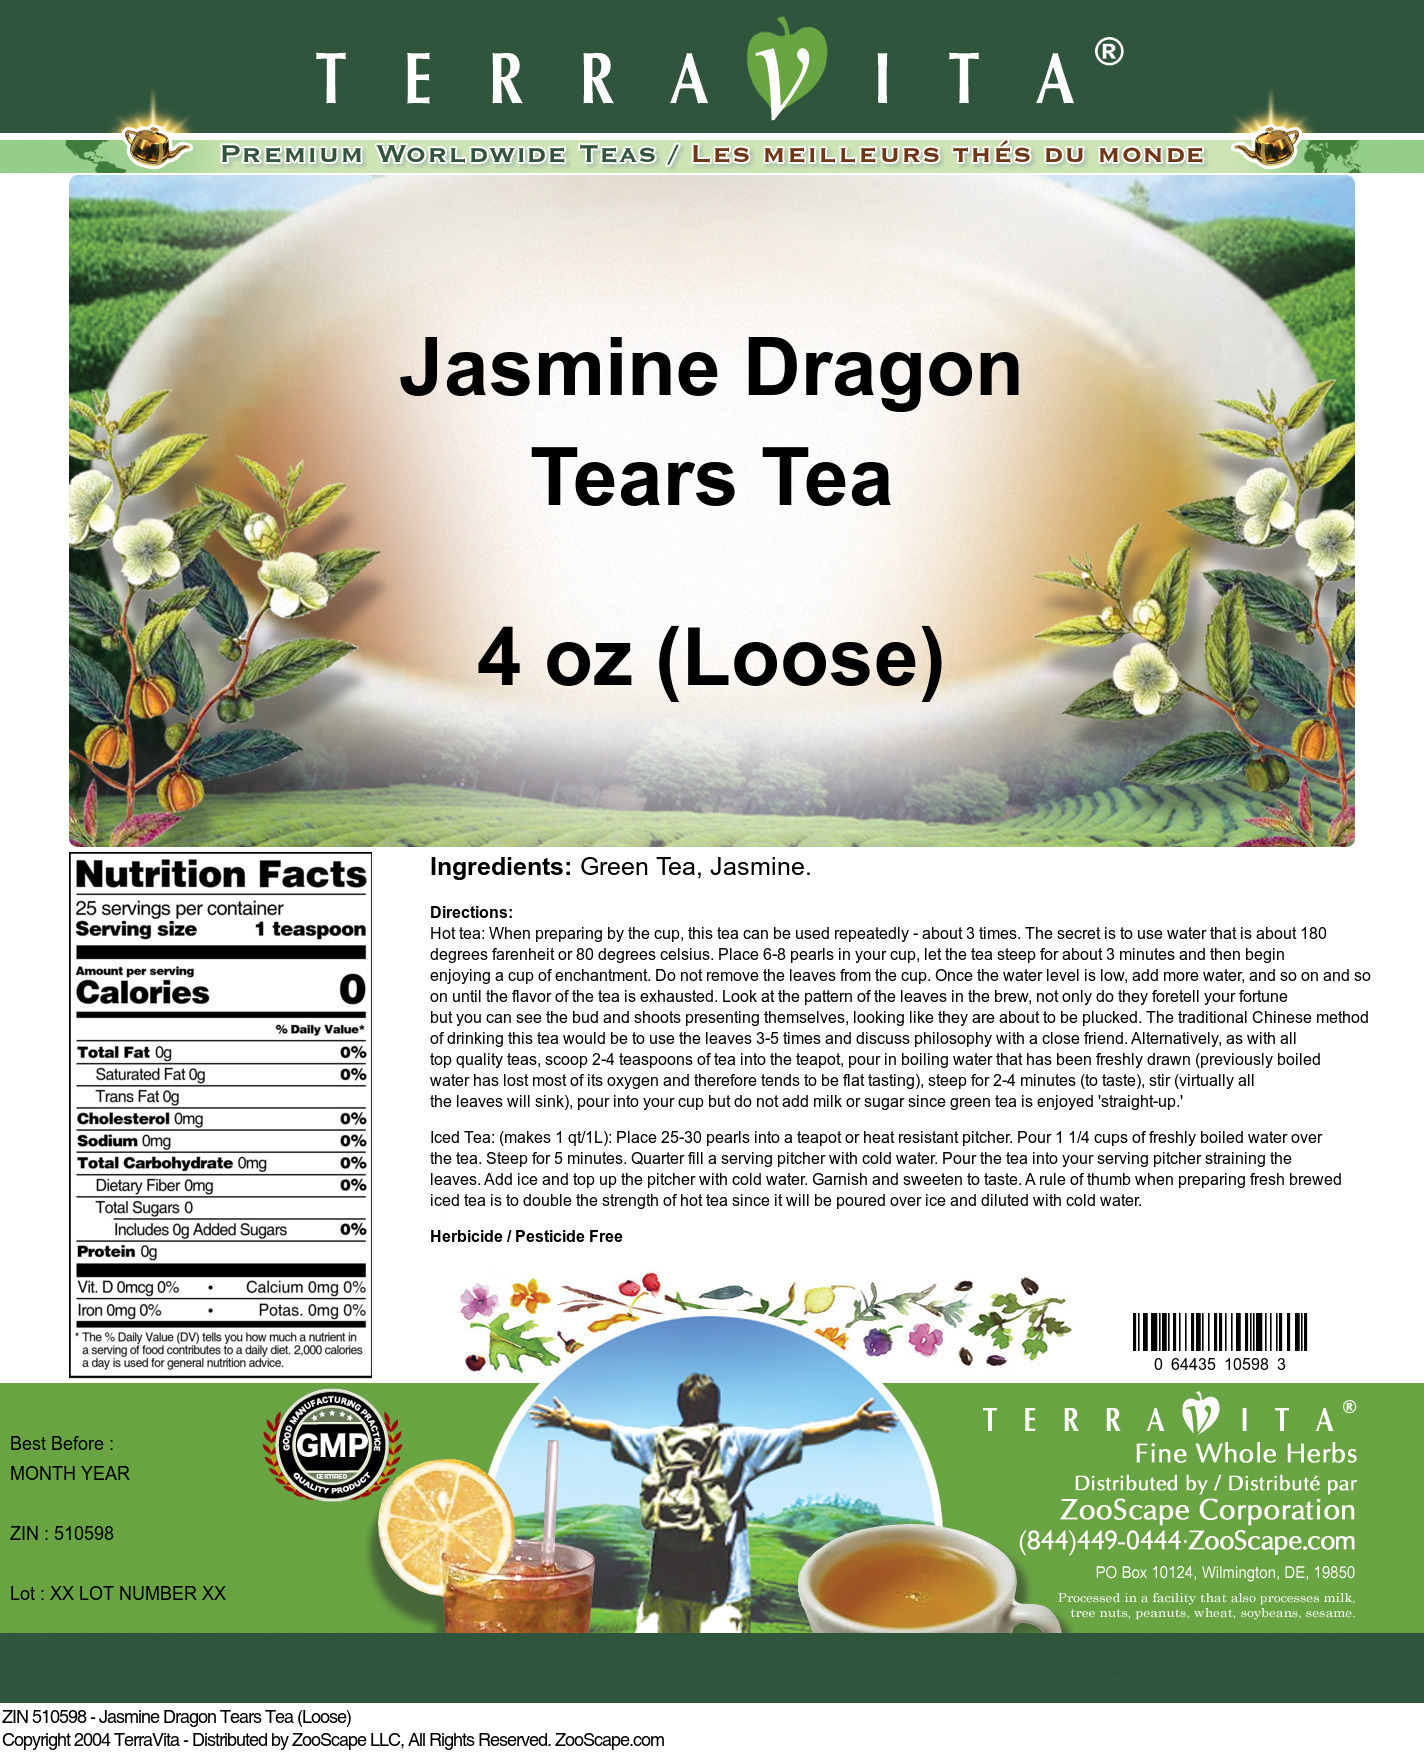 Jasmine Dragon Tears Tea (Loose) - Label